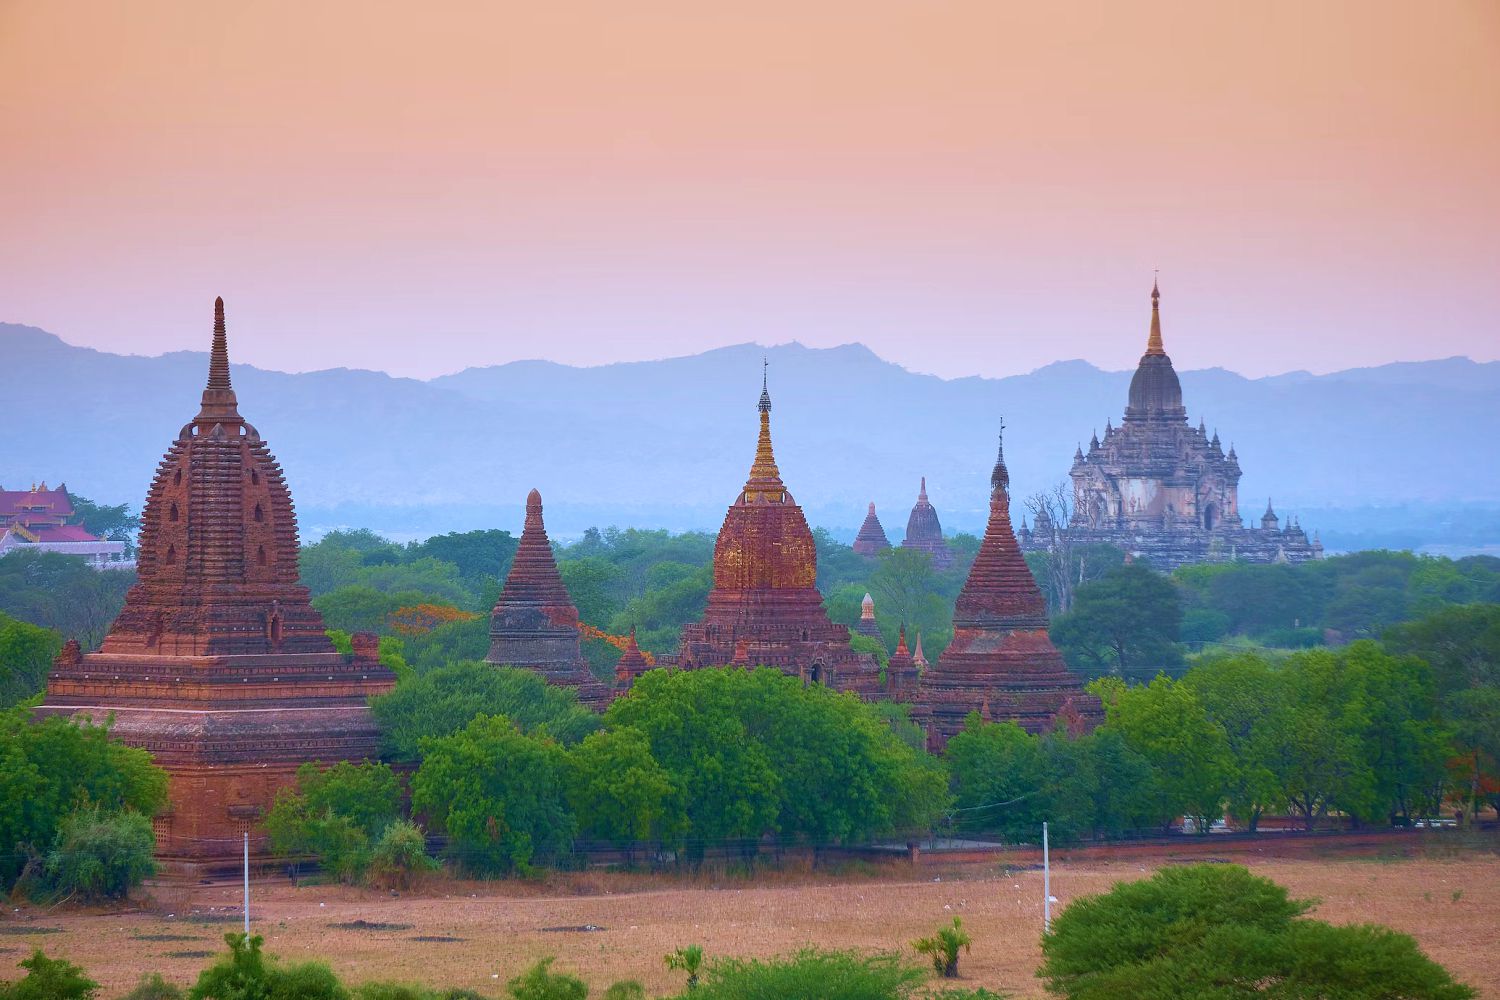 Du lịch Bagan - ngắm mặt trời lặn kì ảo sau hàng nghìn tòa tháp cổ - Ảnh 1.